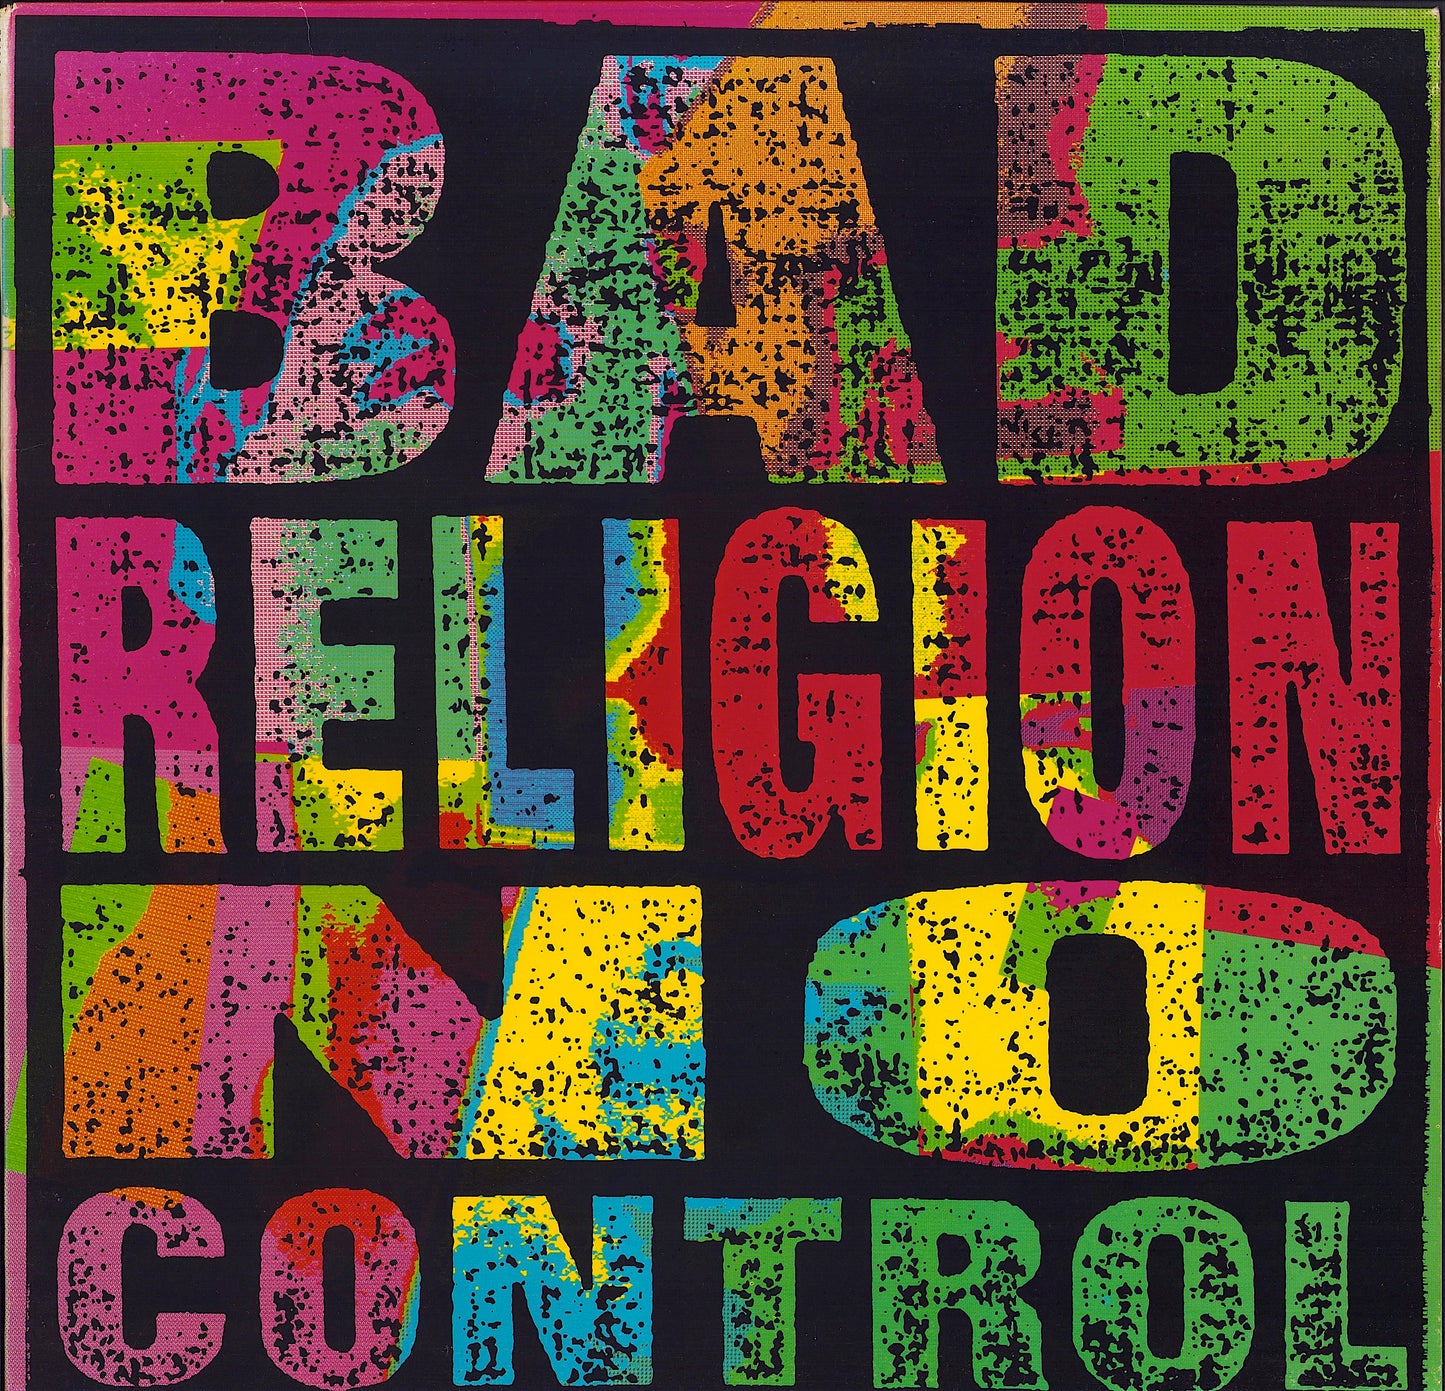 Bad Religion - No Control Vinyl LP US